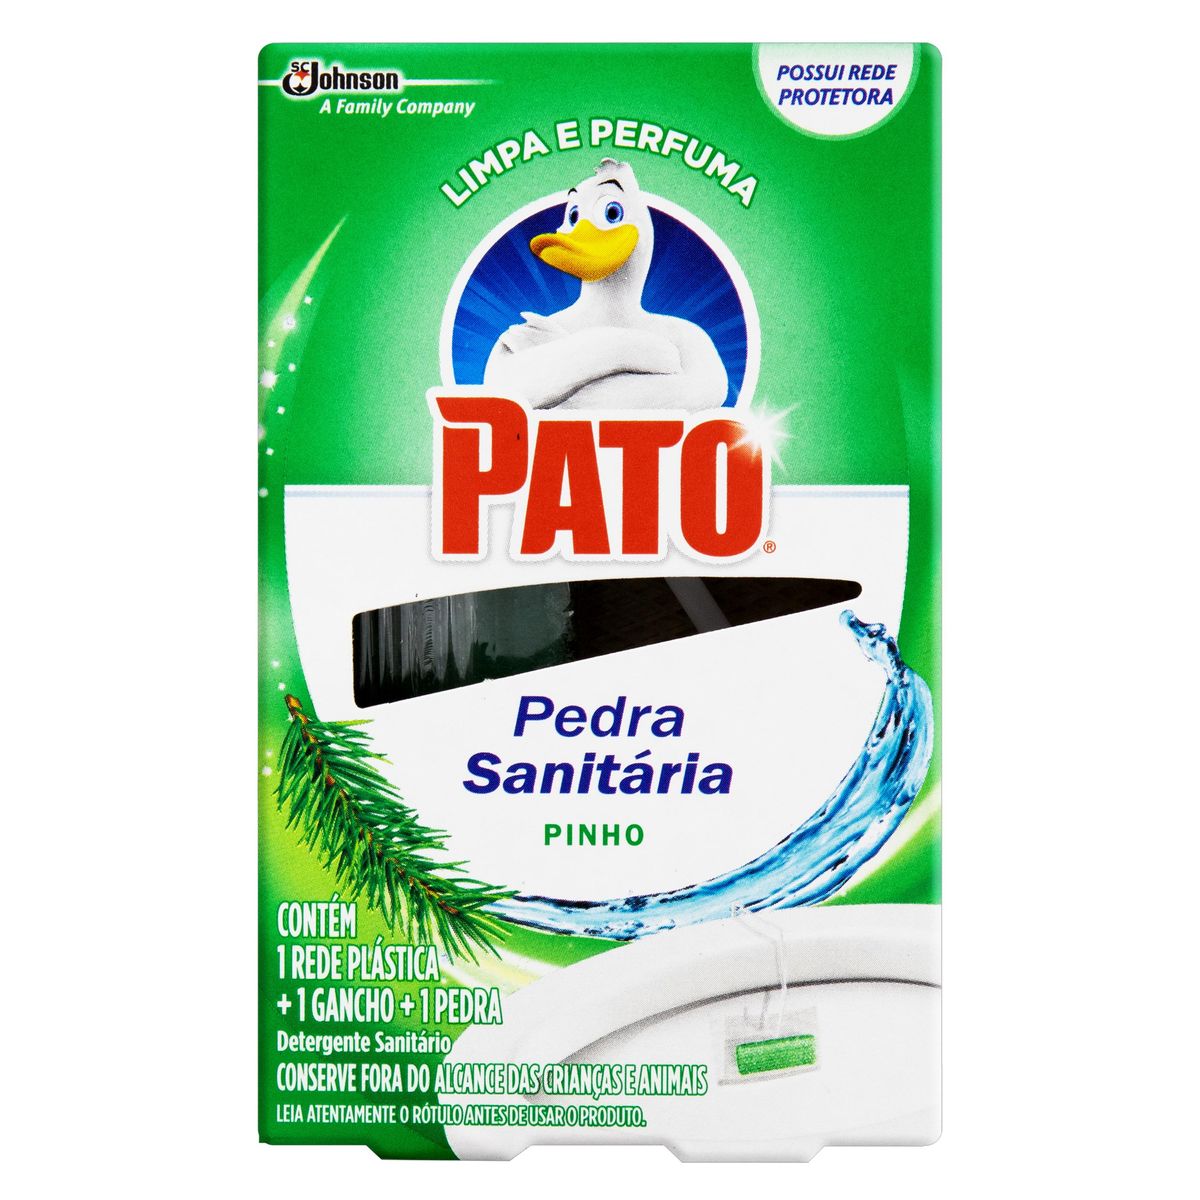 Detergente Sanitário Pato Pedra Pinho